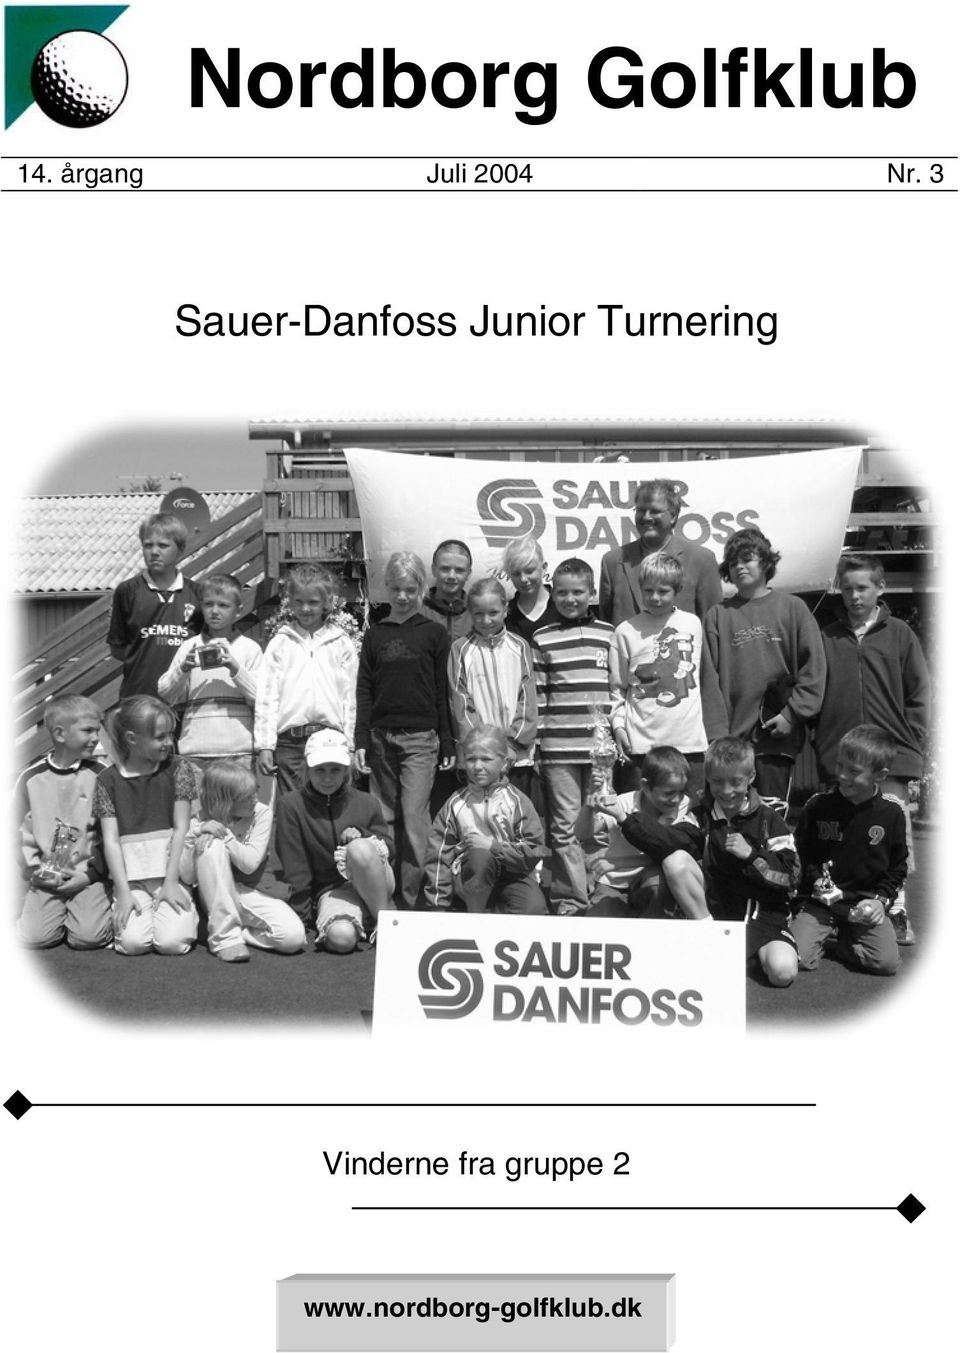 3 Sauer-Danfoss Junior